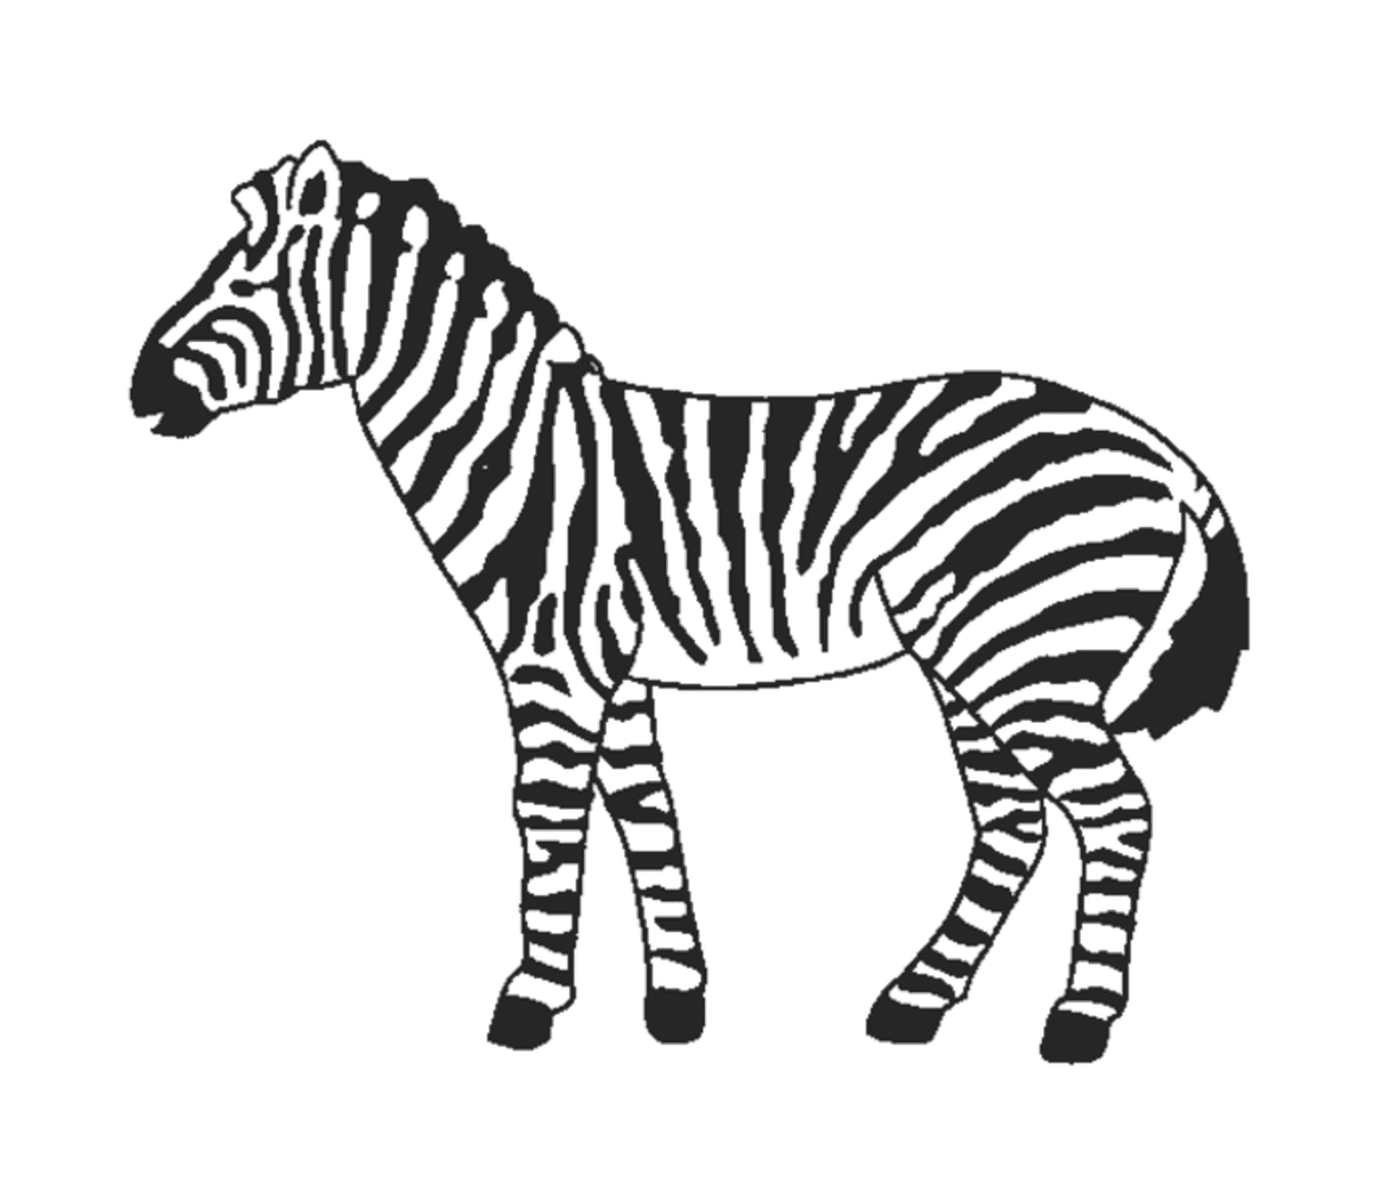  Großzügige Zebras in der Natur 